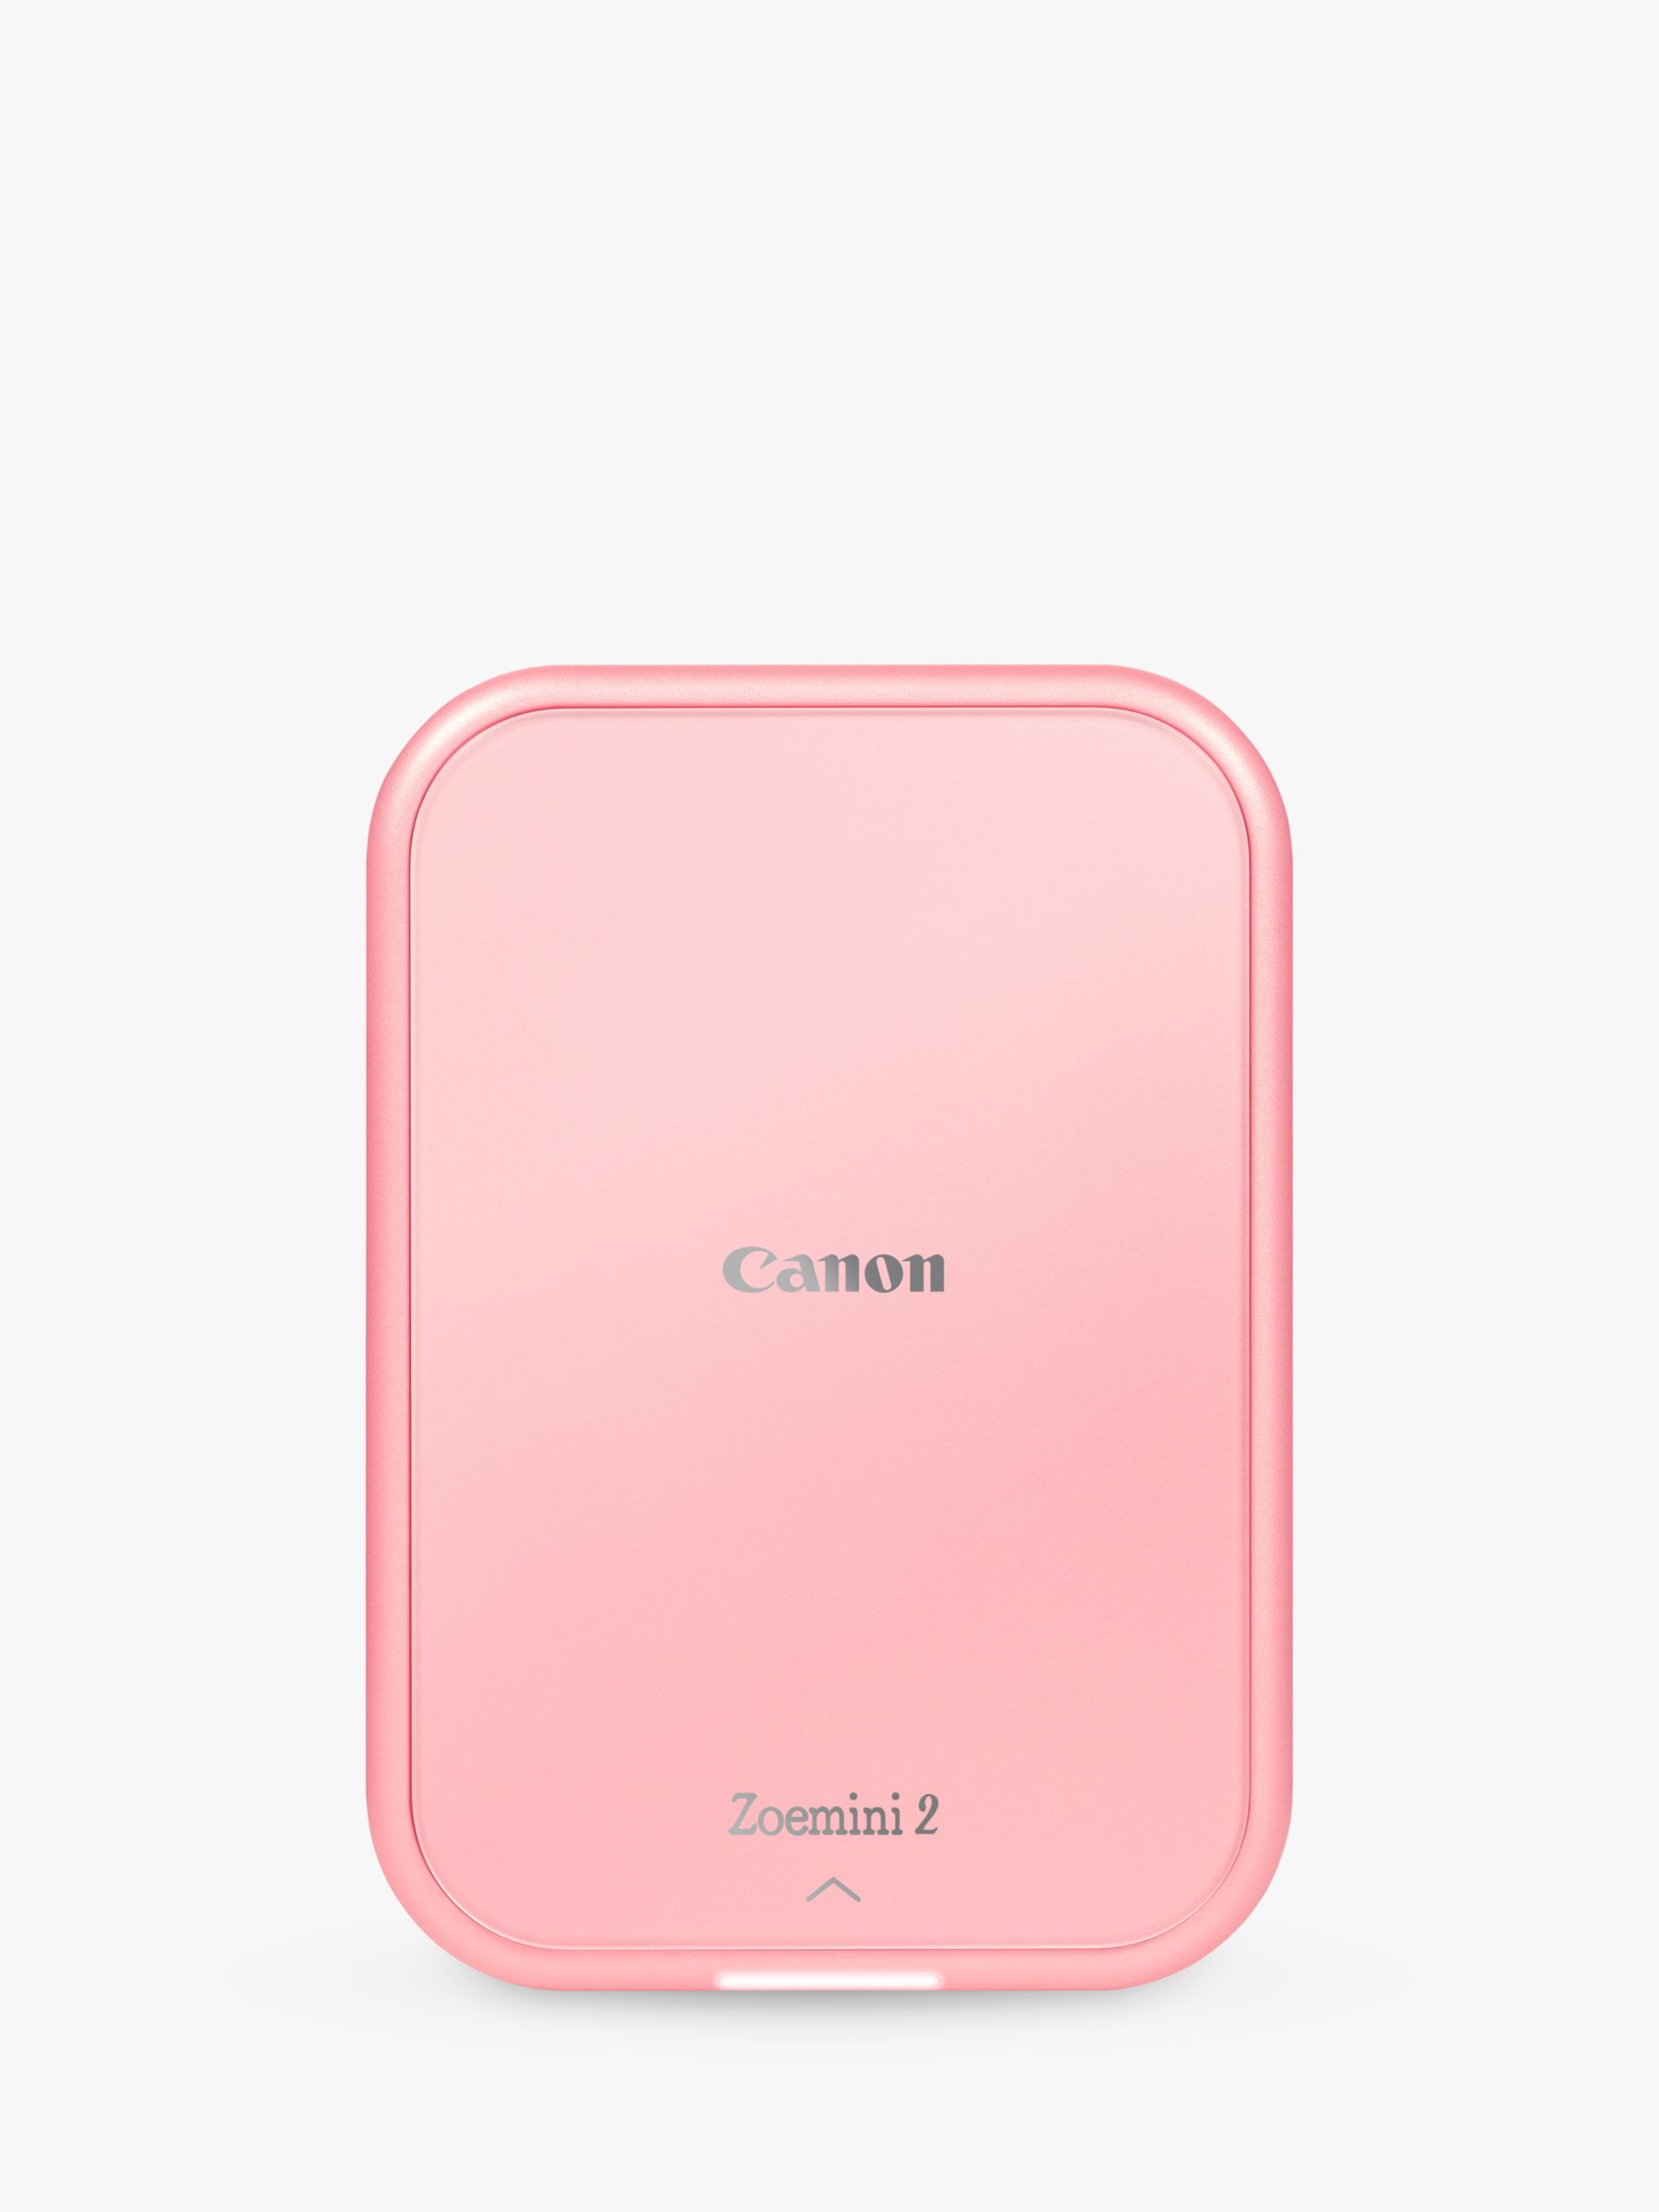 Canon Zoemini 2 Mobile Photo Printer, Rose Gold